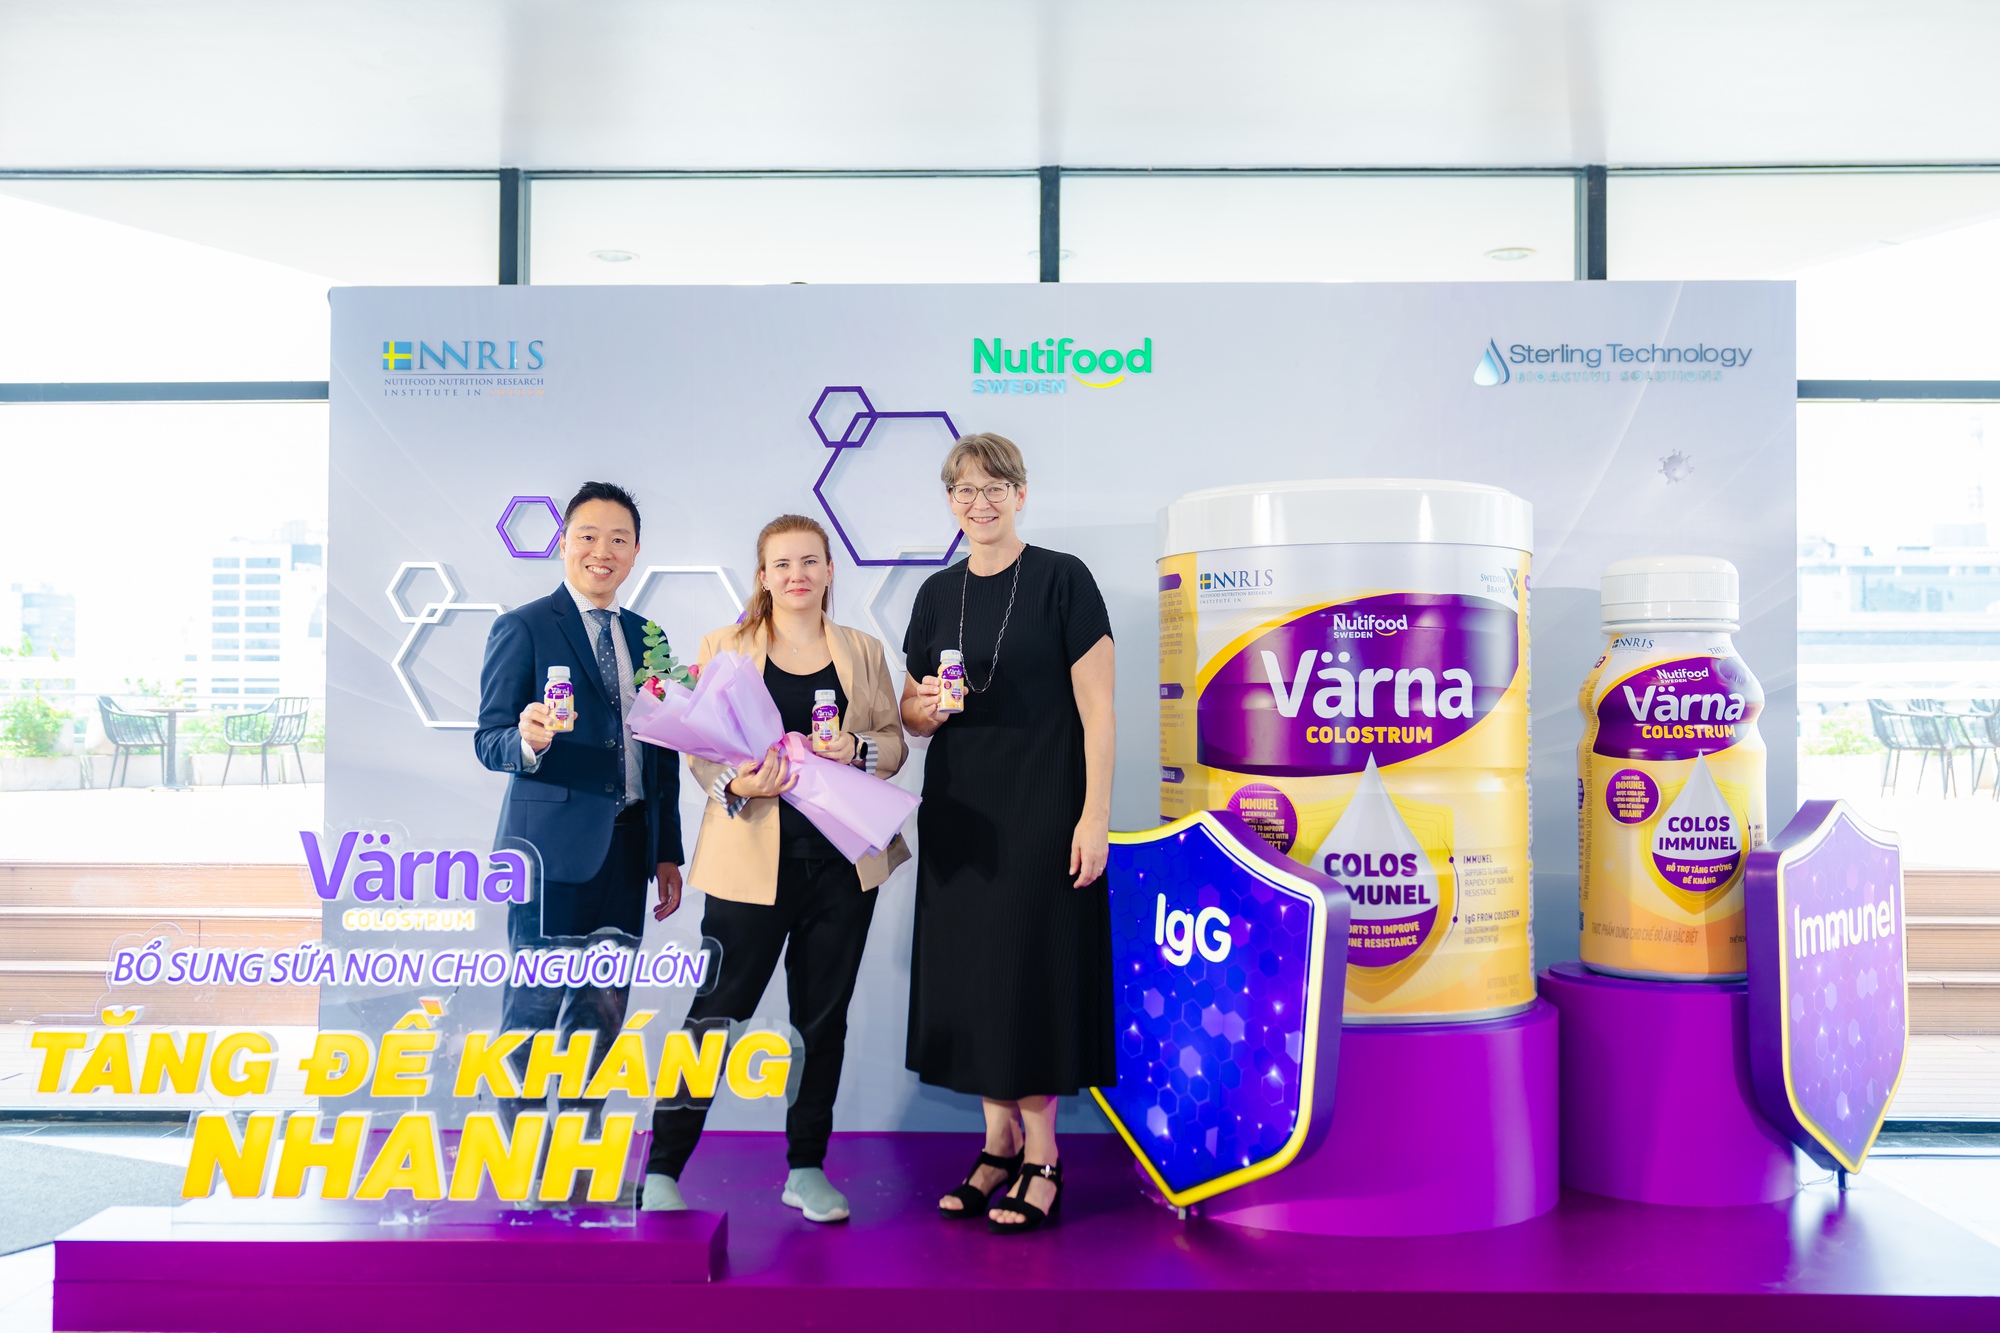 Ra mắt sản phẩm Värna Colostrum hỗ trợ tăng đề kháng cho người Việt - Ảnh 1.